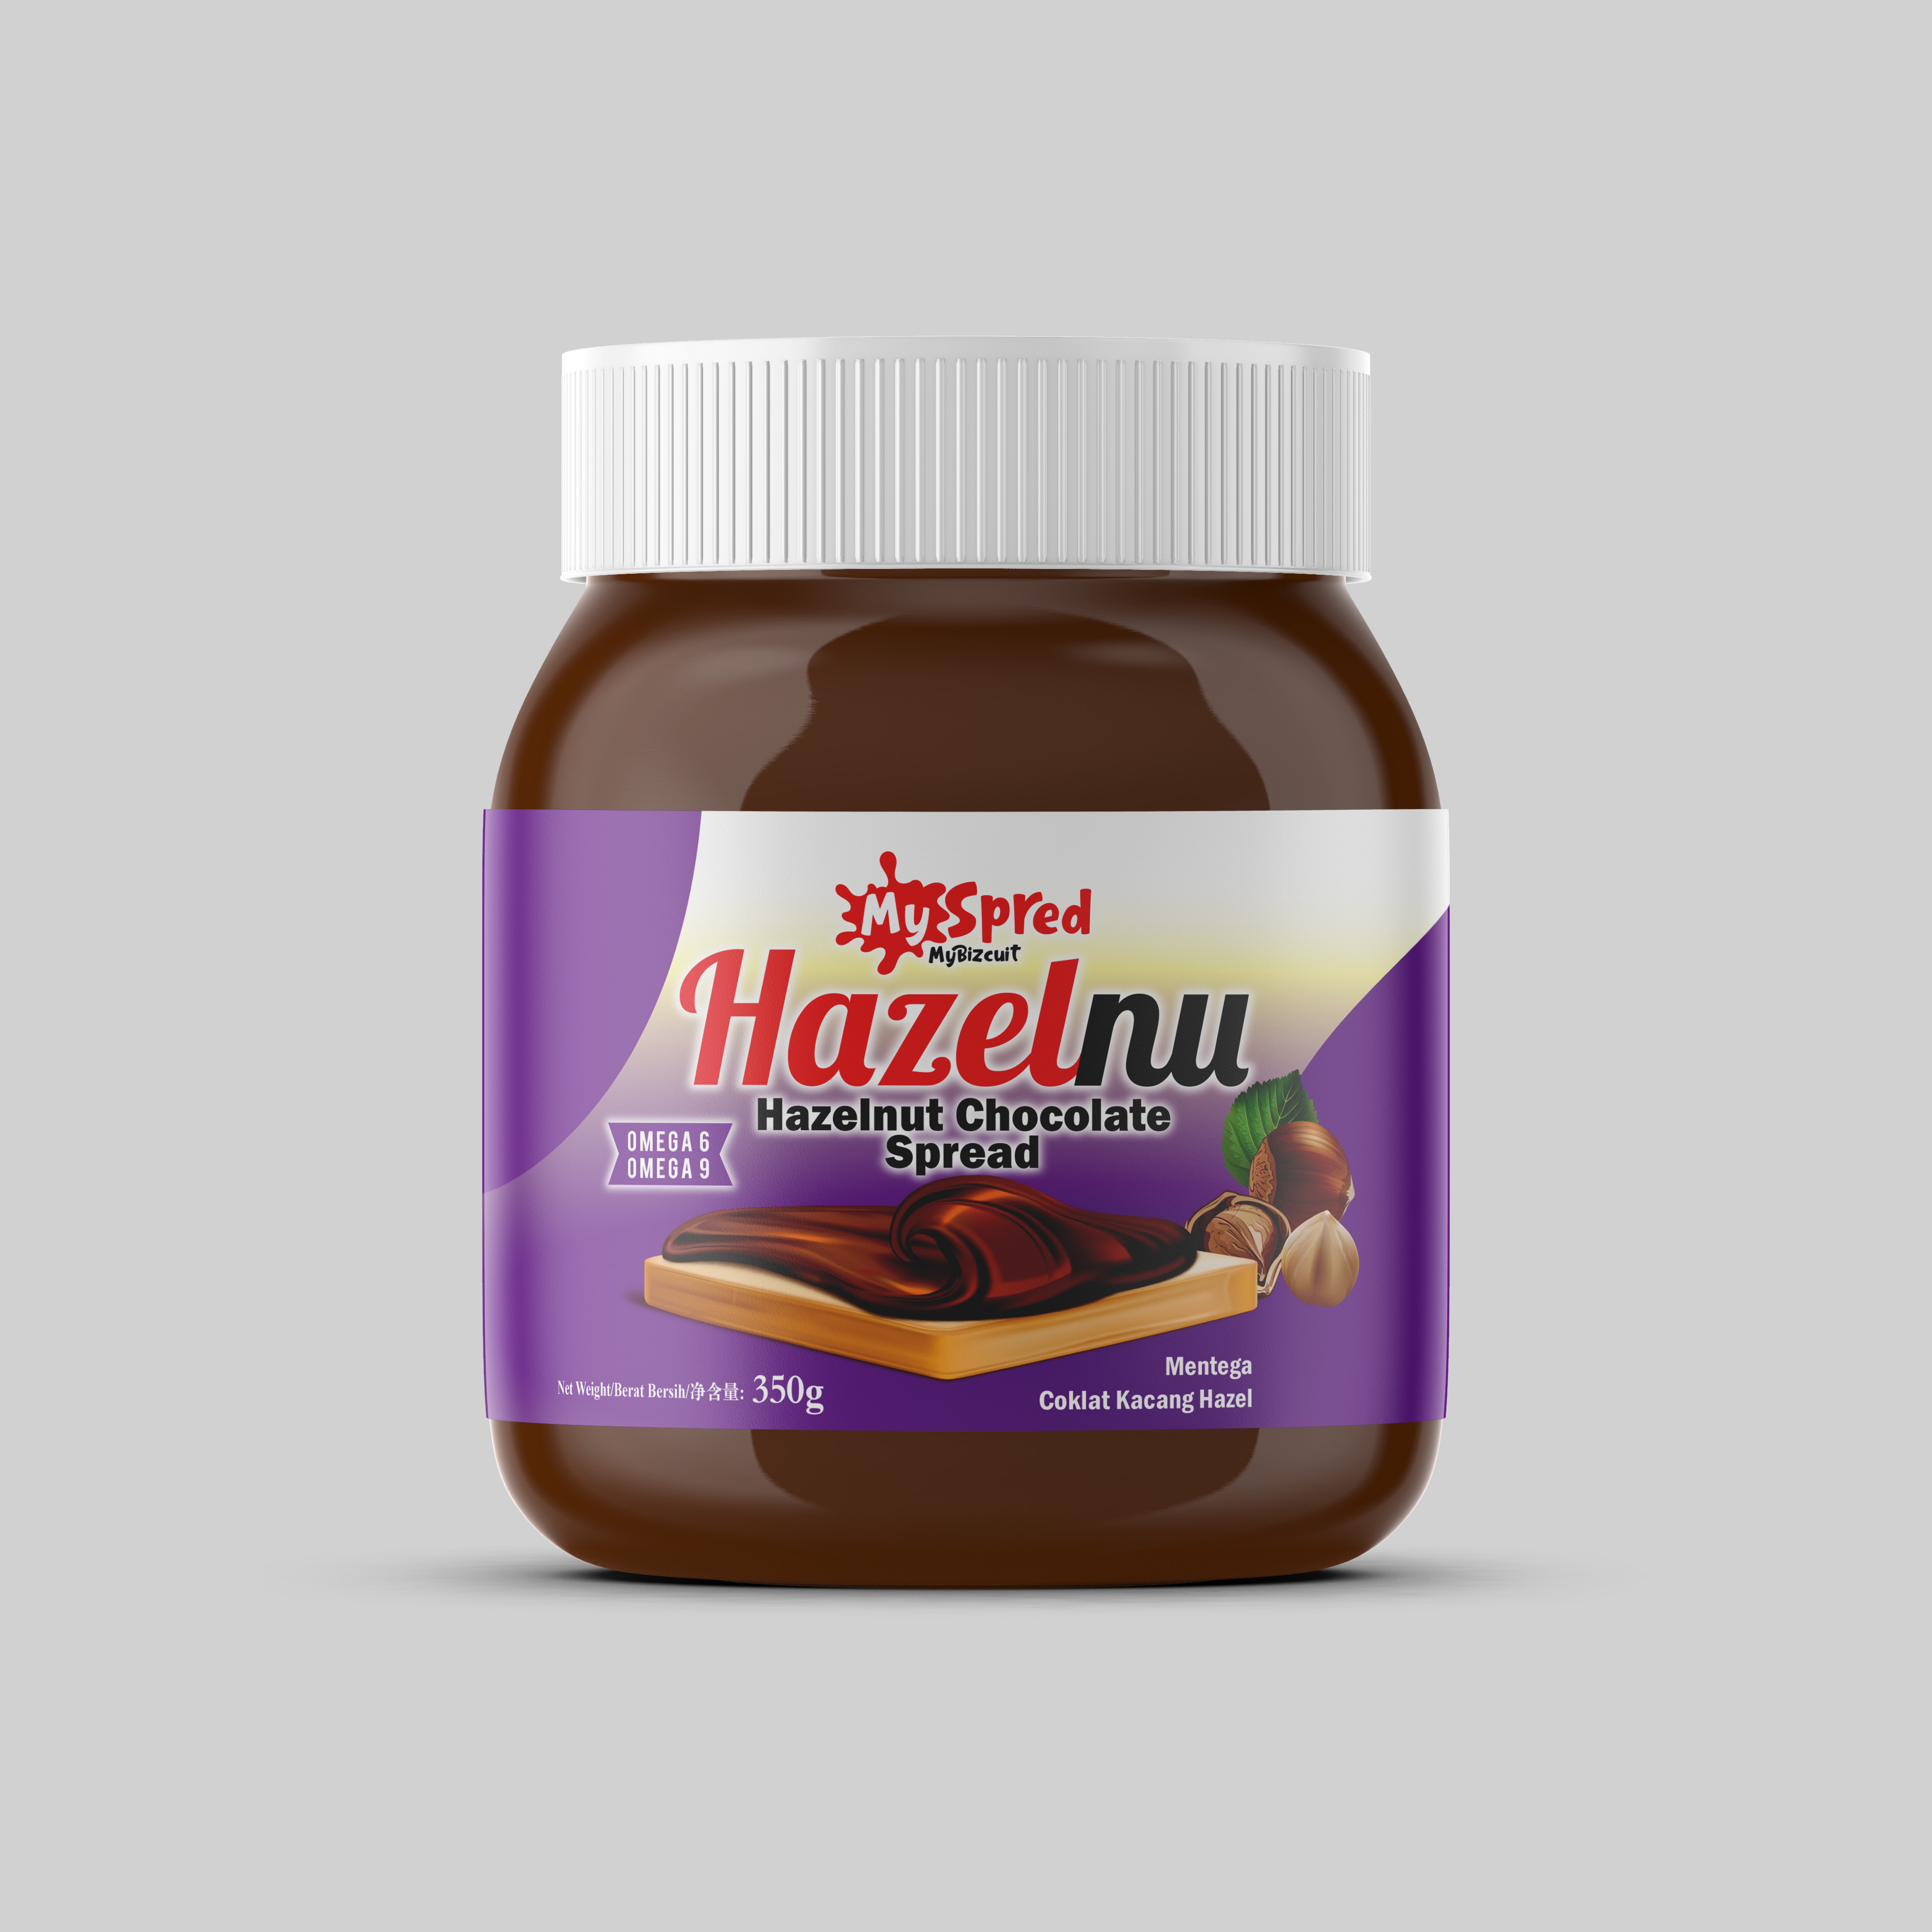 My Spread Hazelnu Hazelnut Chocolate Spread